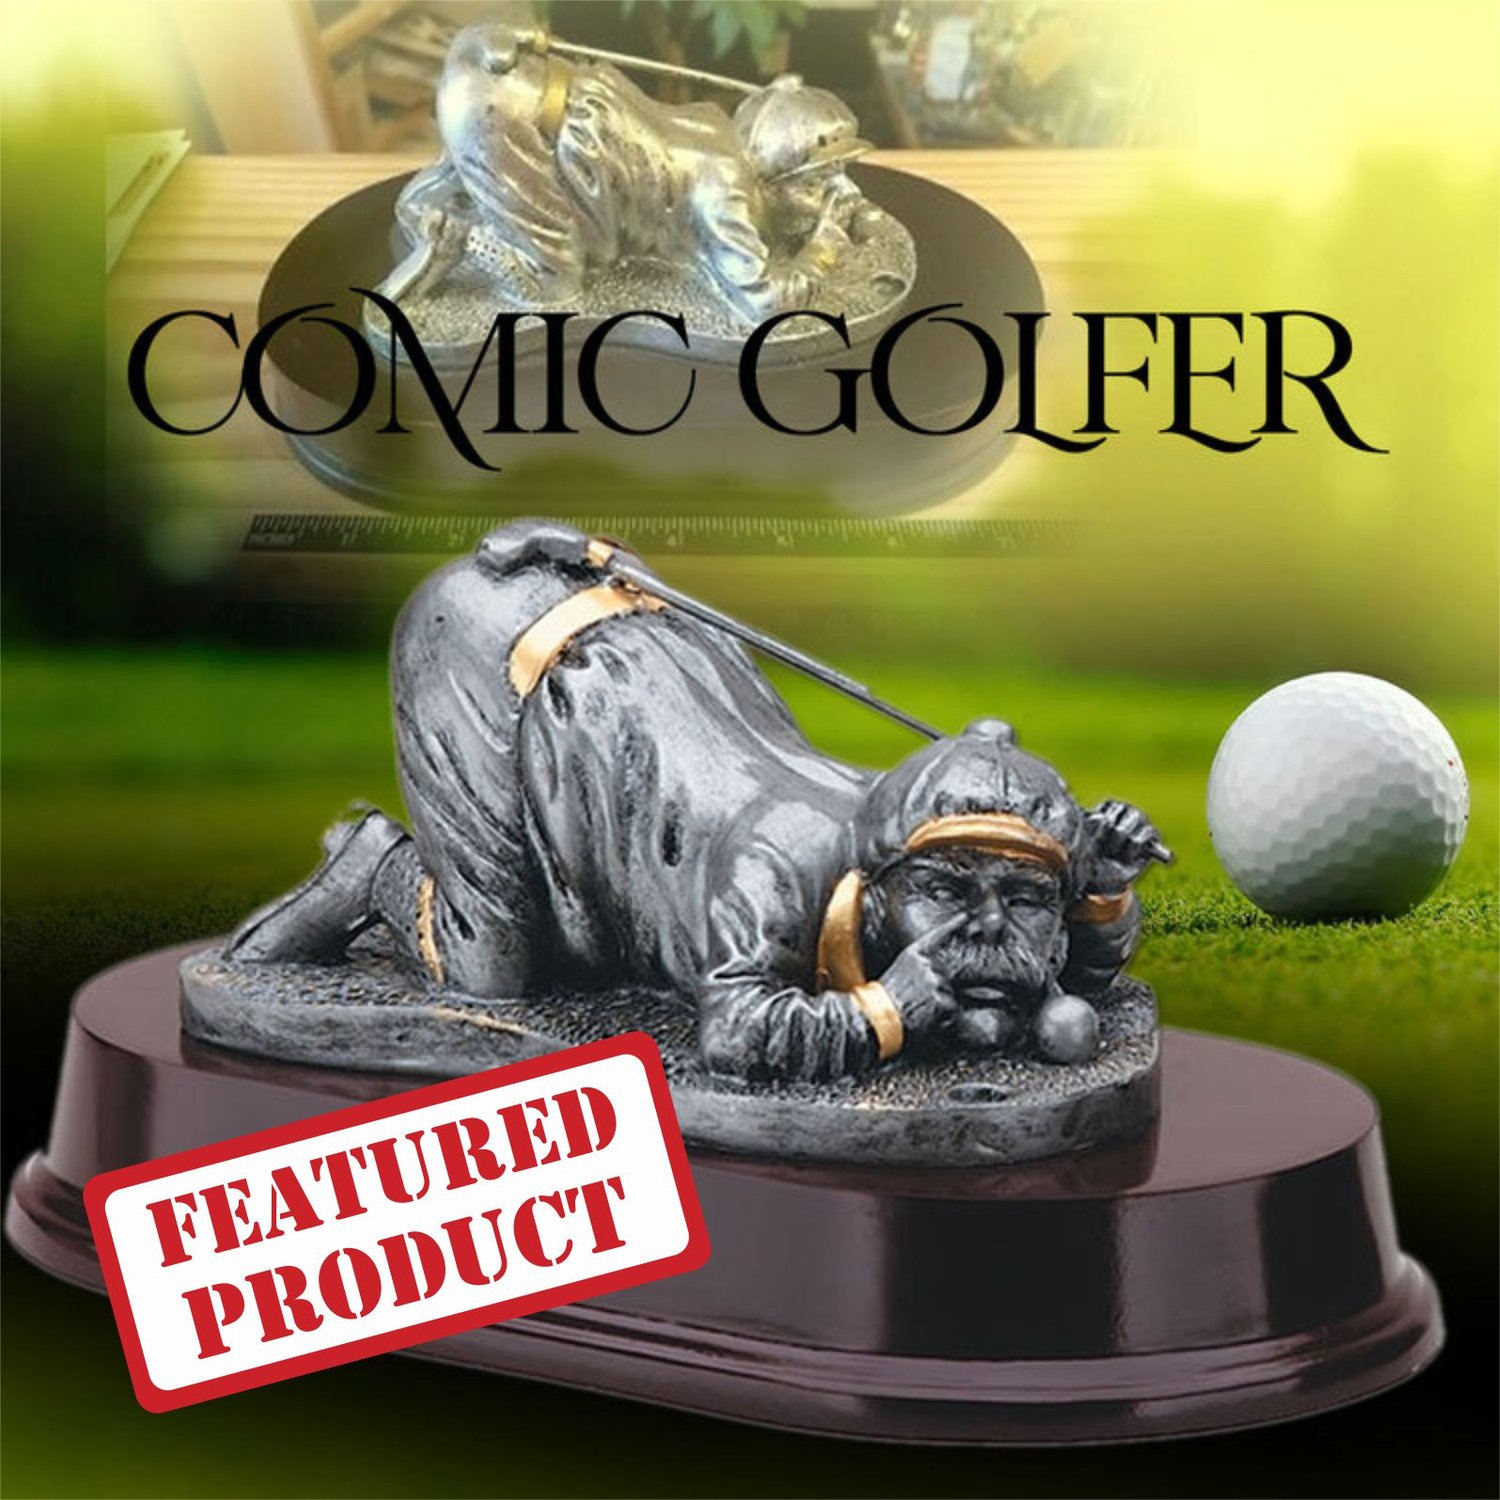 Funny Comic Golfer 5